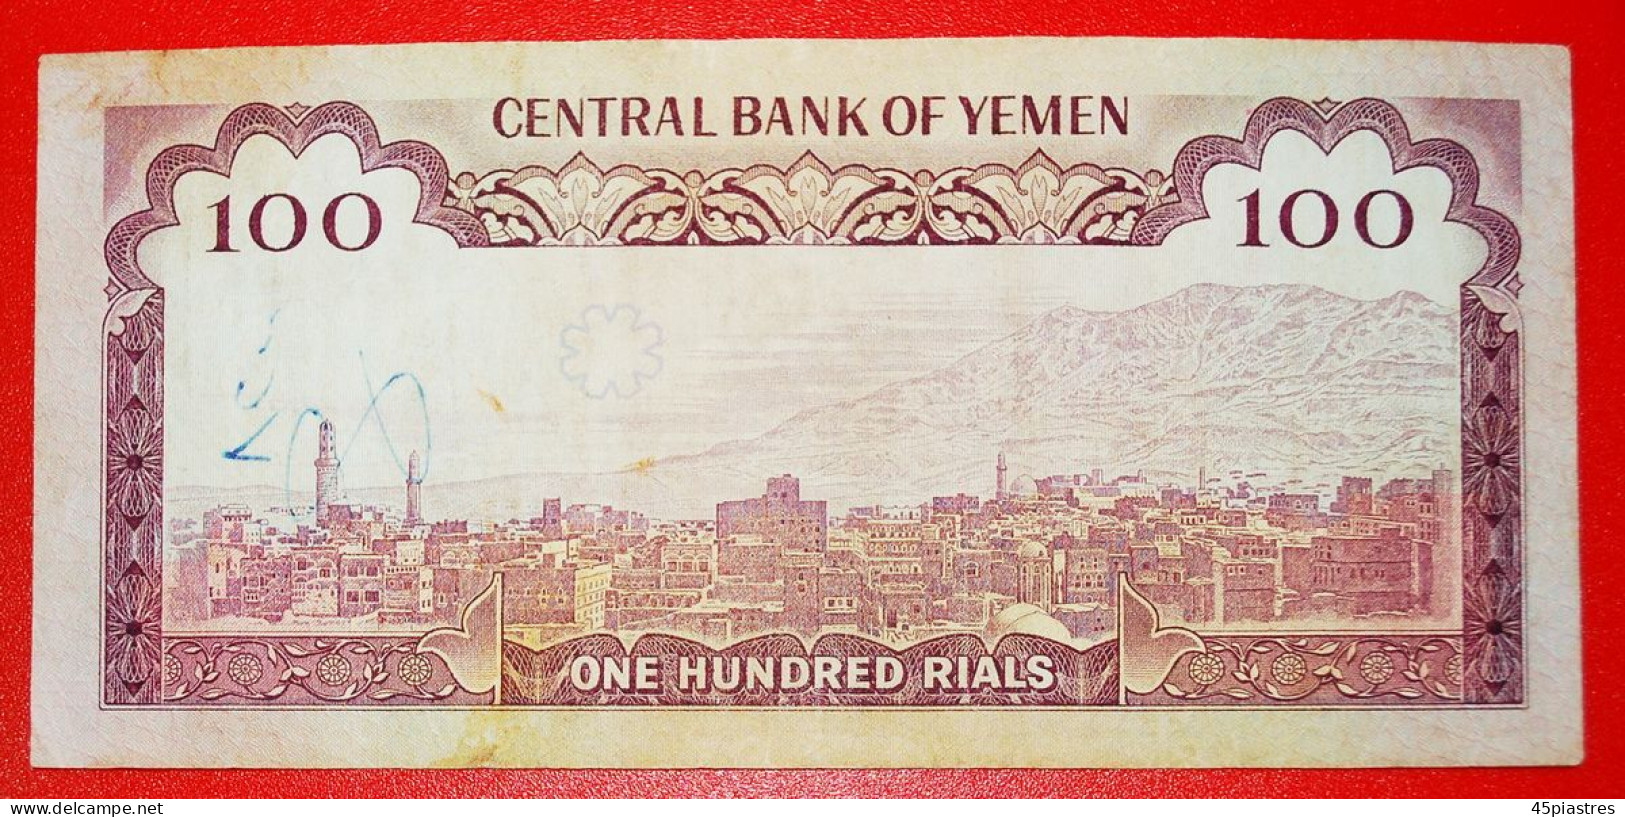 &#9733;MOSQUE: YEMEN &#9733; 100 RIALS (1979)! UNCOMMON! LOW START &#9733; NO RESERVE! - Yemen